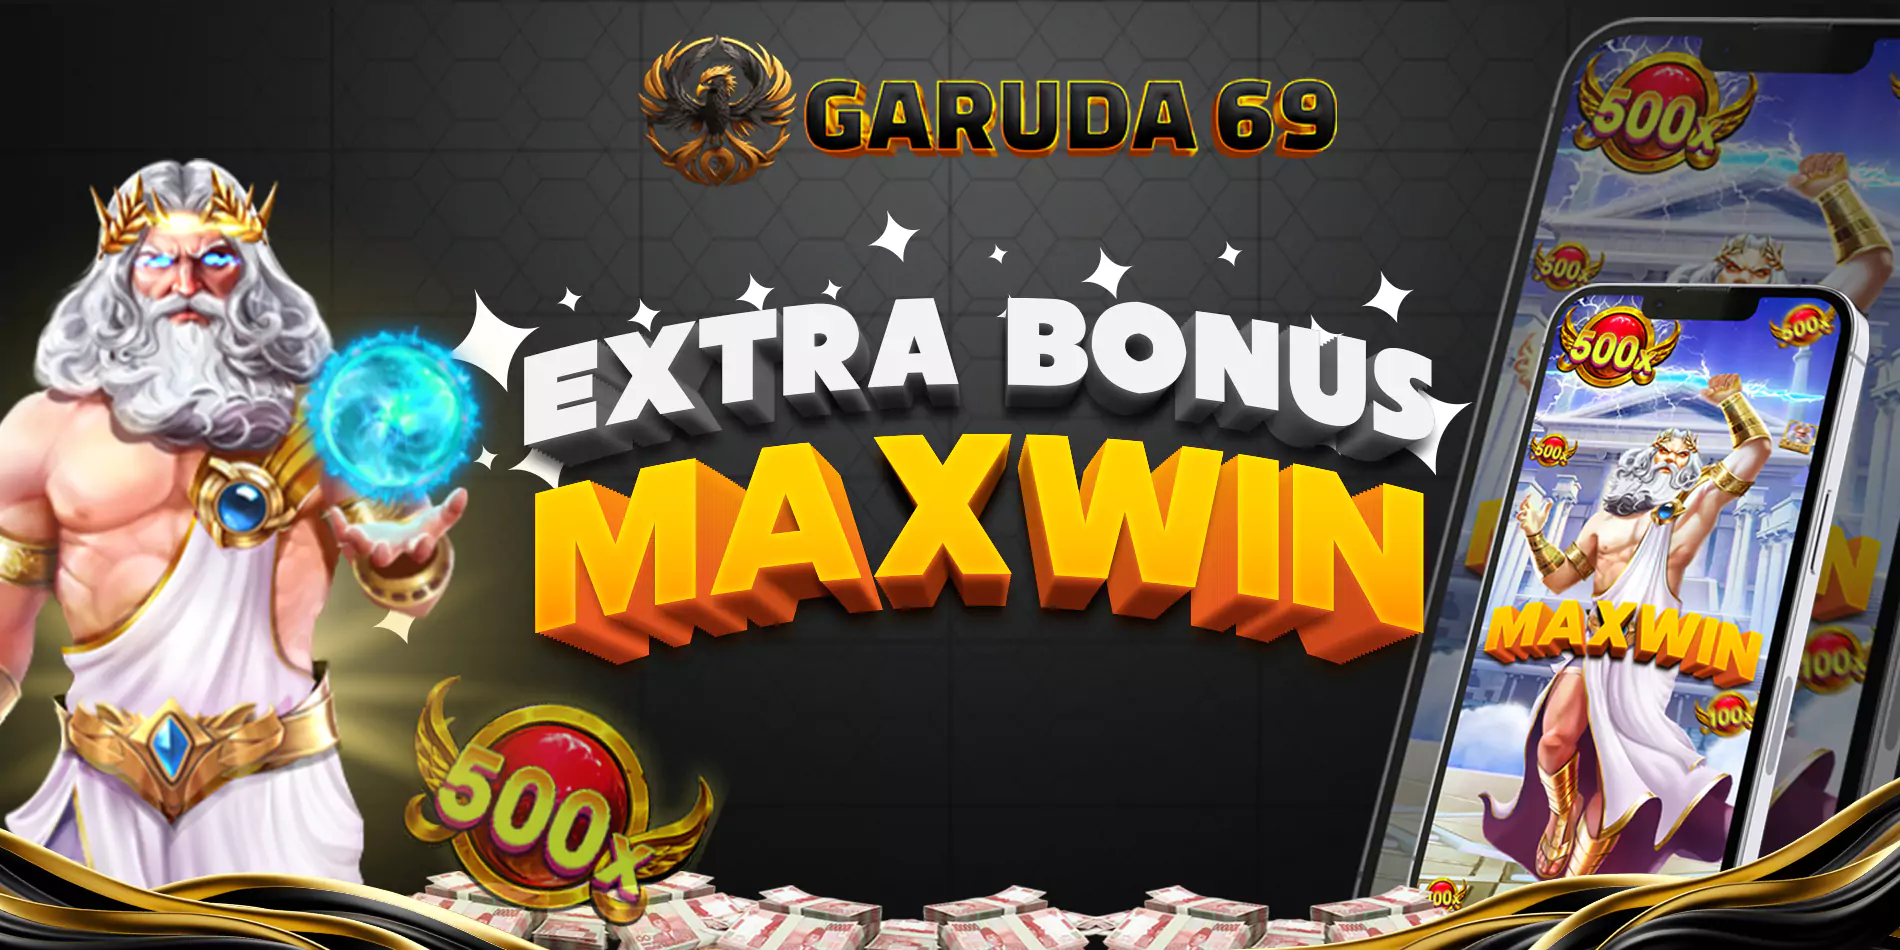 Bonus Maxwin Olimpus Garudatoto